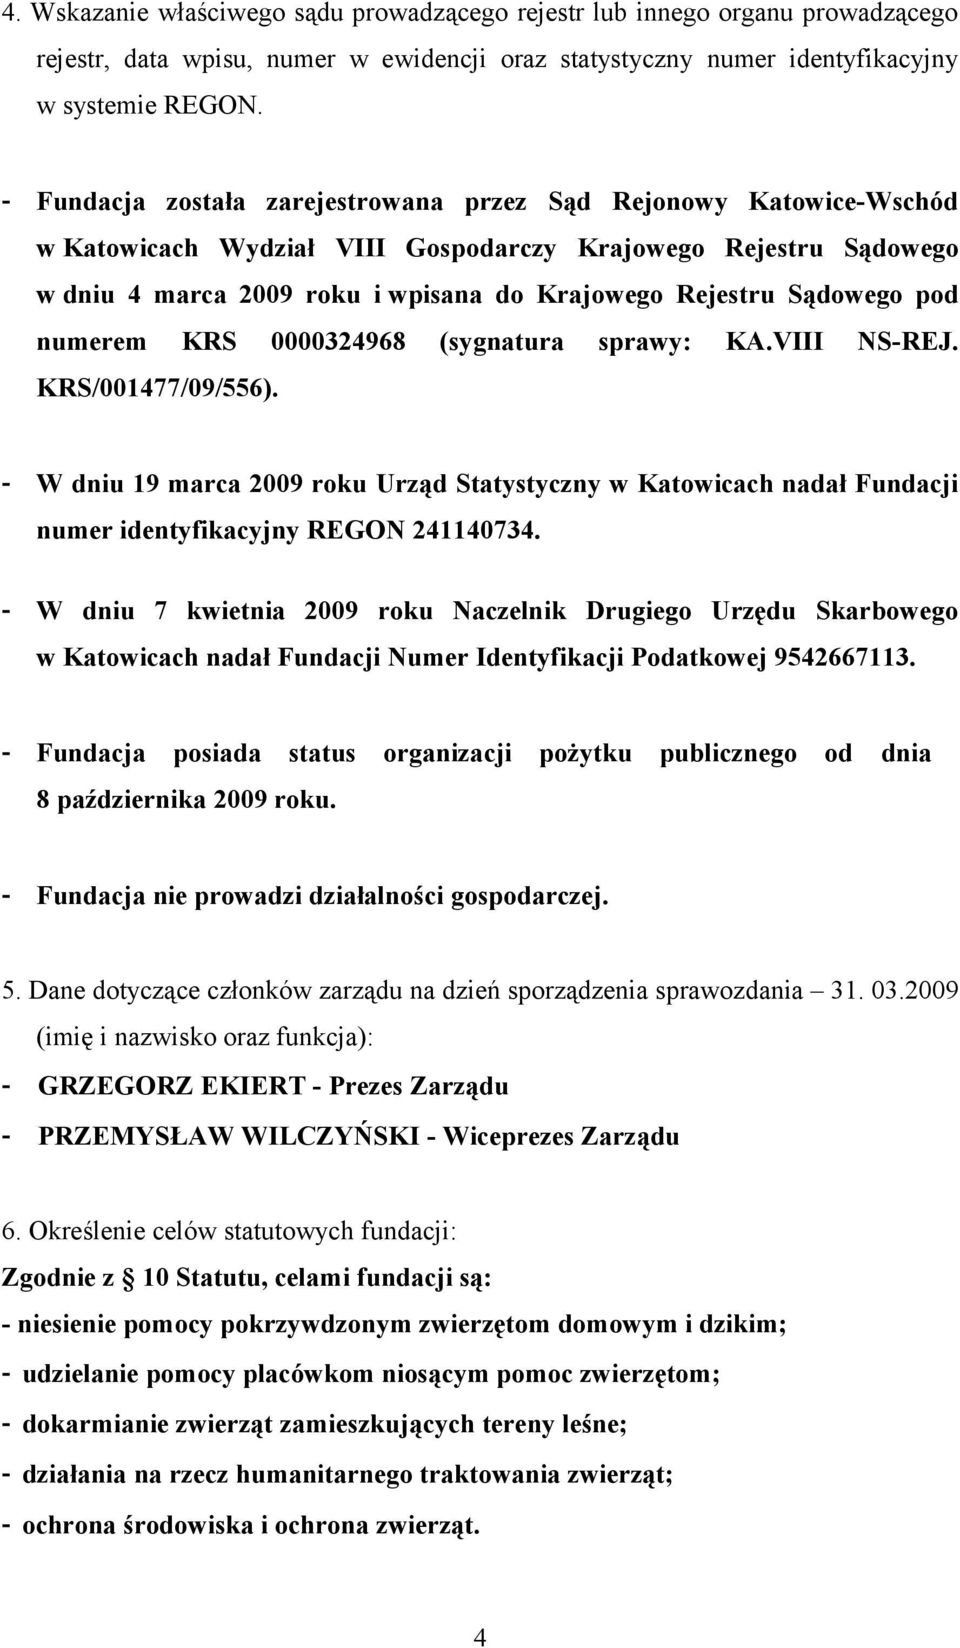 pod numerem KRS 0000324968 (sygnatura sprawy: KA.VIII NSREJ. KRS/001477/09/556). W dniu 19 marca 2009 roku Urząd Statystyczny w Katowicach nadał Fundacji numer identyfikacyjny REGON 241140734.